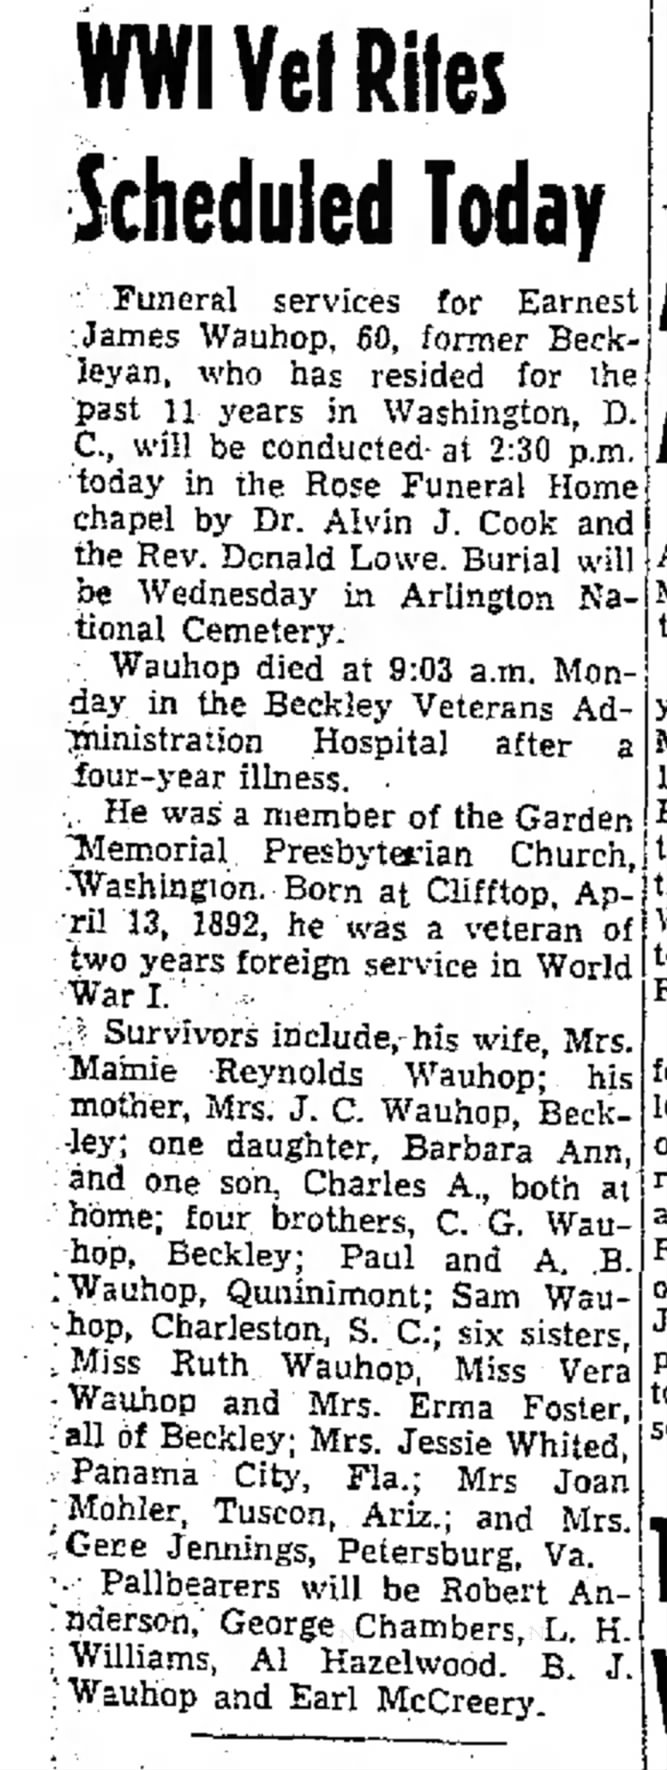 Ernest James Wauhop  August 5, 1952